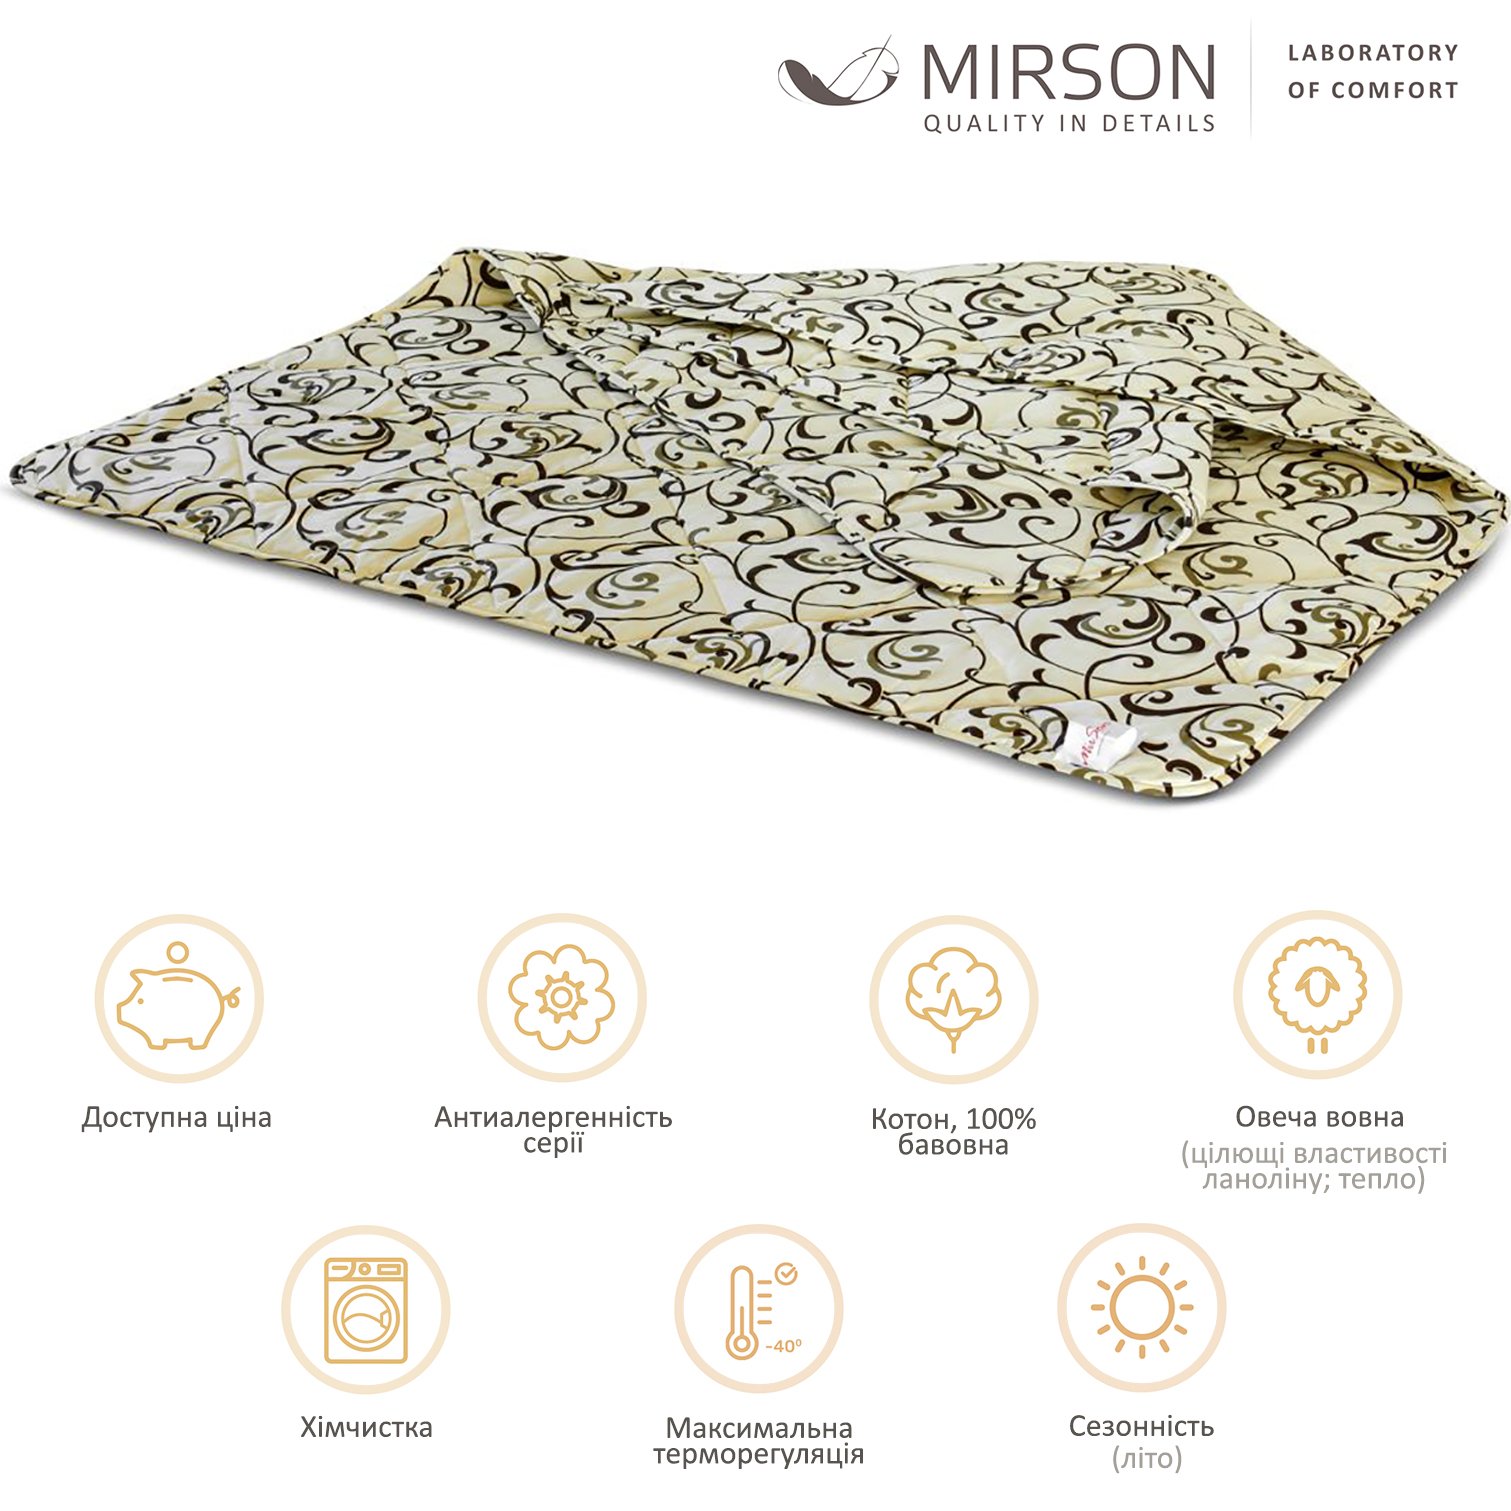 Одеяло шерстяное MirSon №016, летнее, 110x140 см, бежевое с узором - фото 4